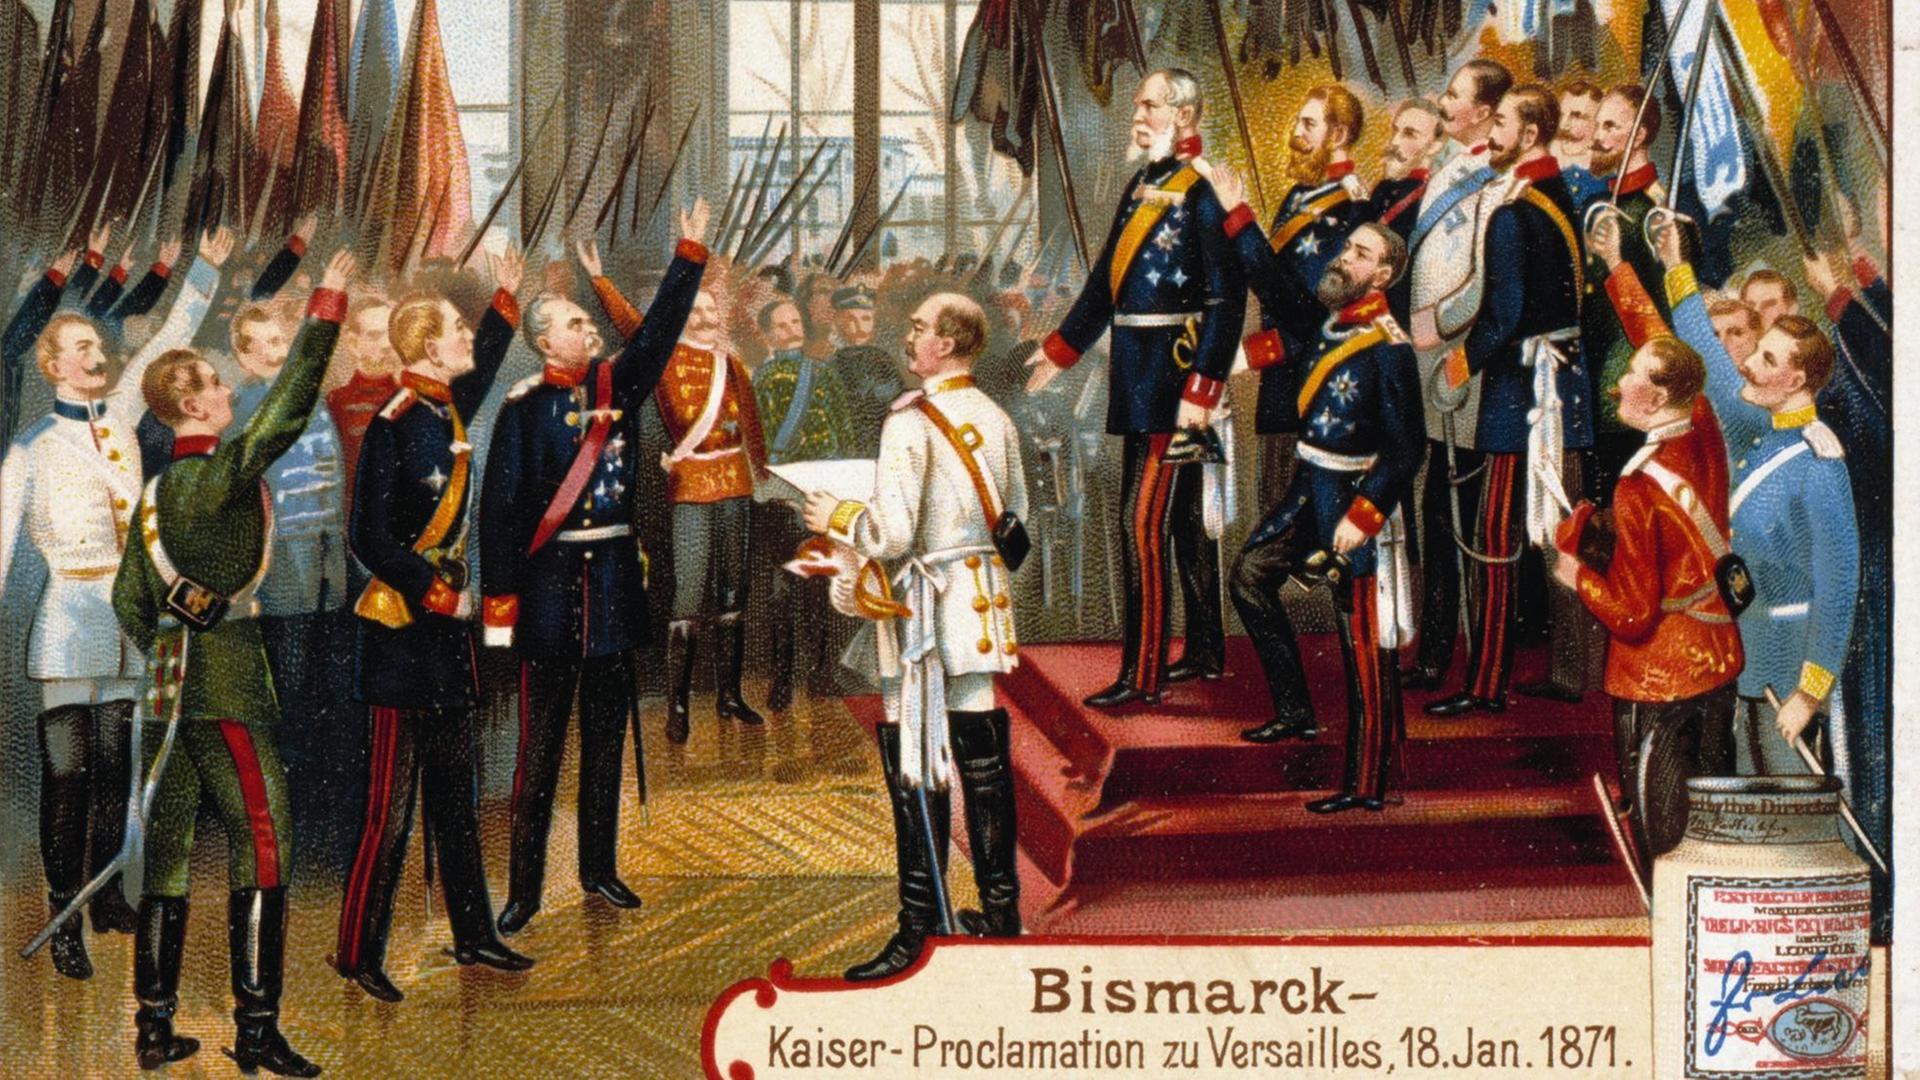 Eine Farblithographie von 1899 zeigt die Kaiserproklamation 1871 auf einem damals begehrten Liebig-Sammelbildchen